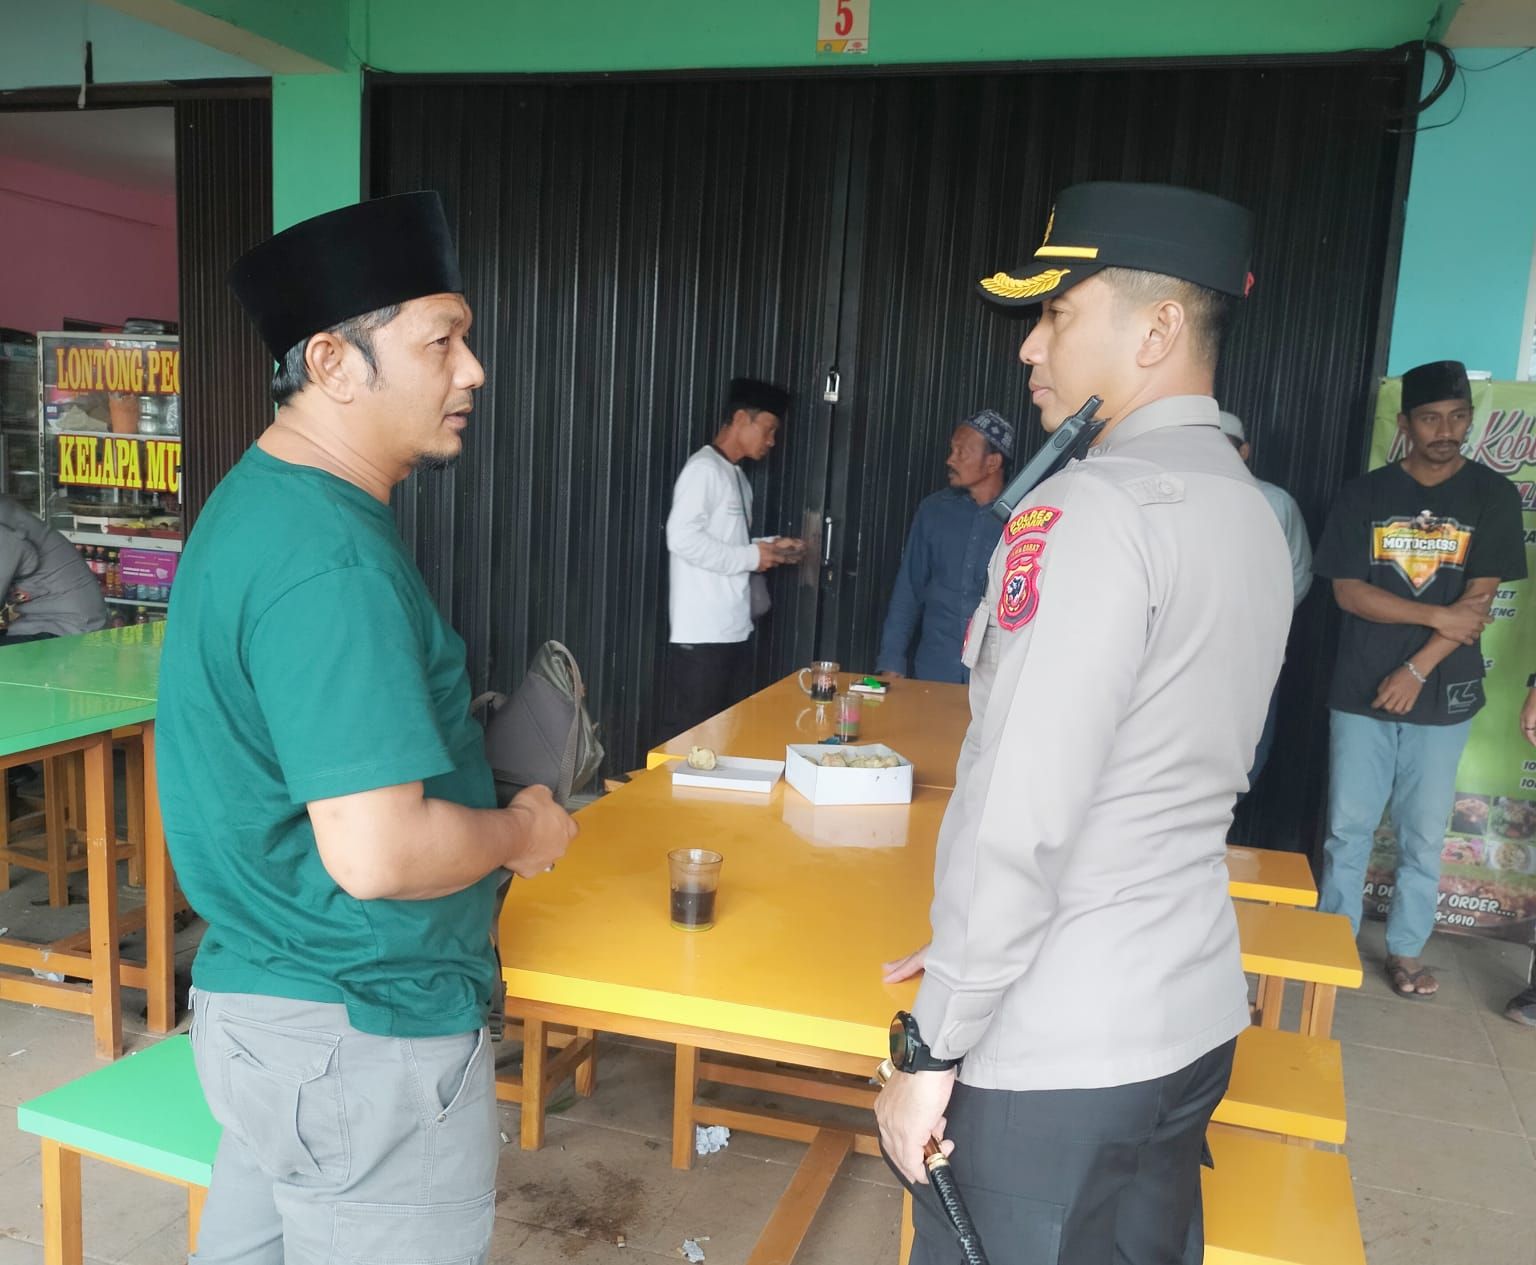 Pimp.Ponpes Lembur Cahaya, Gus Deni Nawawi sedang berkoordinasi dengan Kapolres Cianjur AKBP Doni Hermawan untuk menyalurkan bantuan kepada para korban gempa.